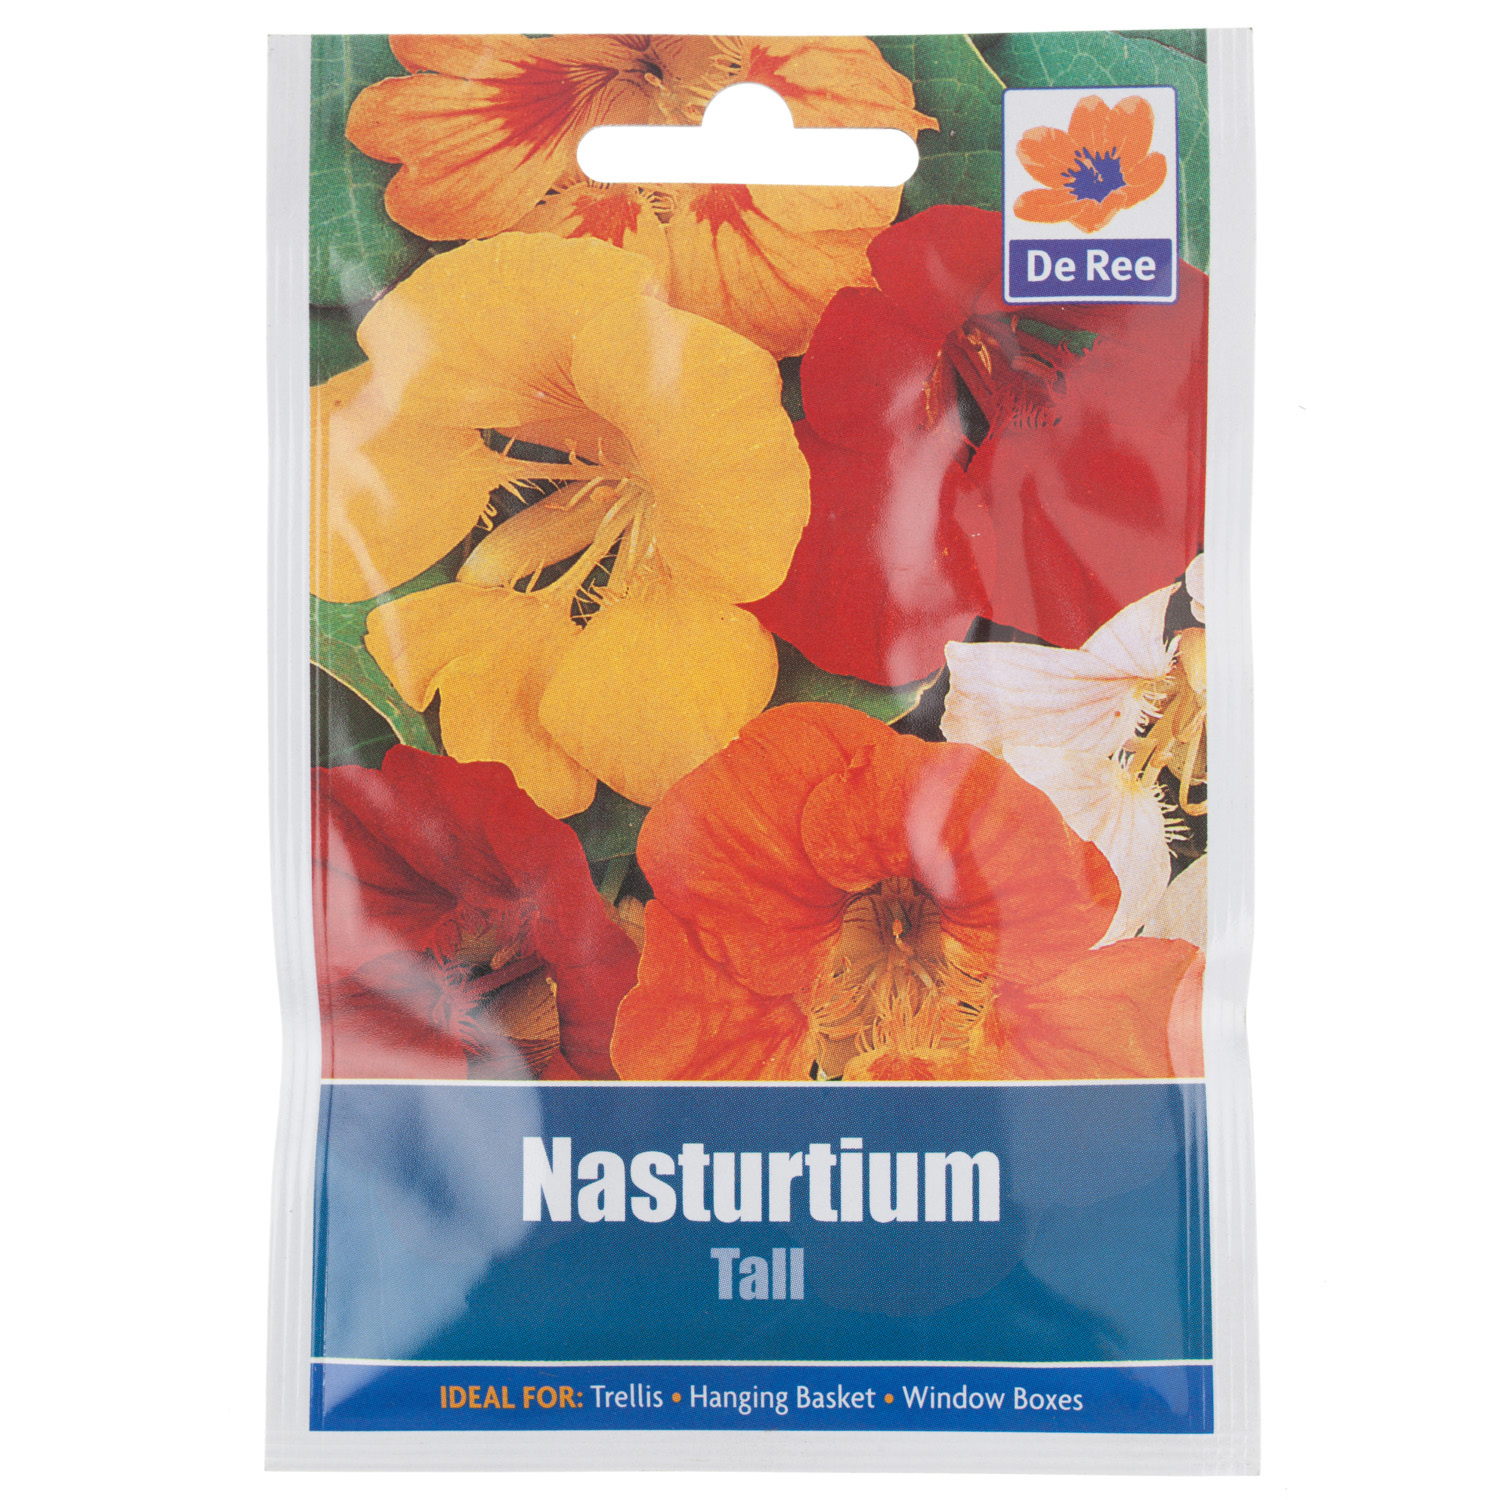 Tall Nasturtium Seed Packet Image